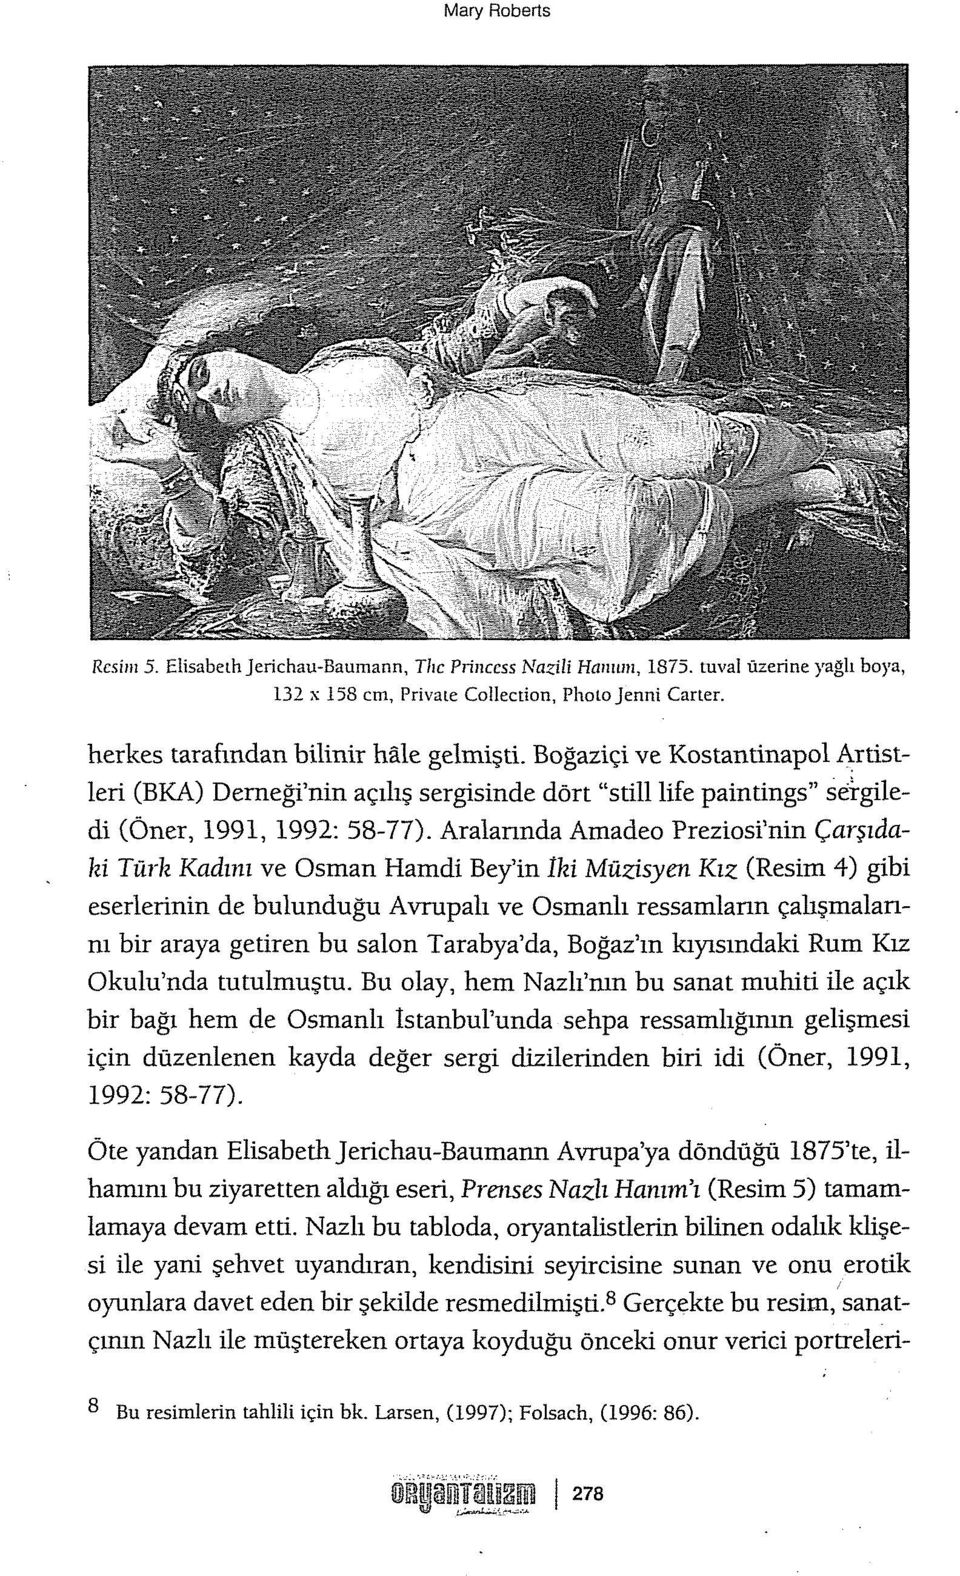 Aralannda Amadeo Preziosi'nin Çarşıdahi Türk Kadını ve Osman Harndi Bey'in Iki Müzisyen Kız (Resim 4) gibi eserlerinin de bulunduğu Avrupalı ve Osmanlı ressamiann çalışmalannı bir araya getiren bu